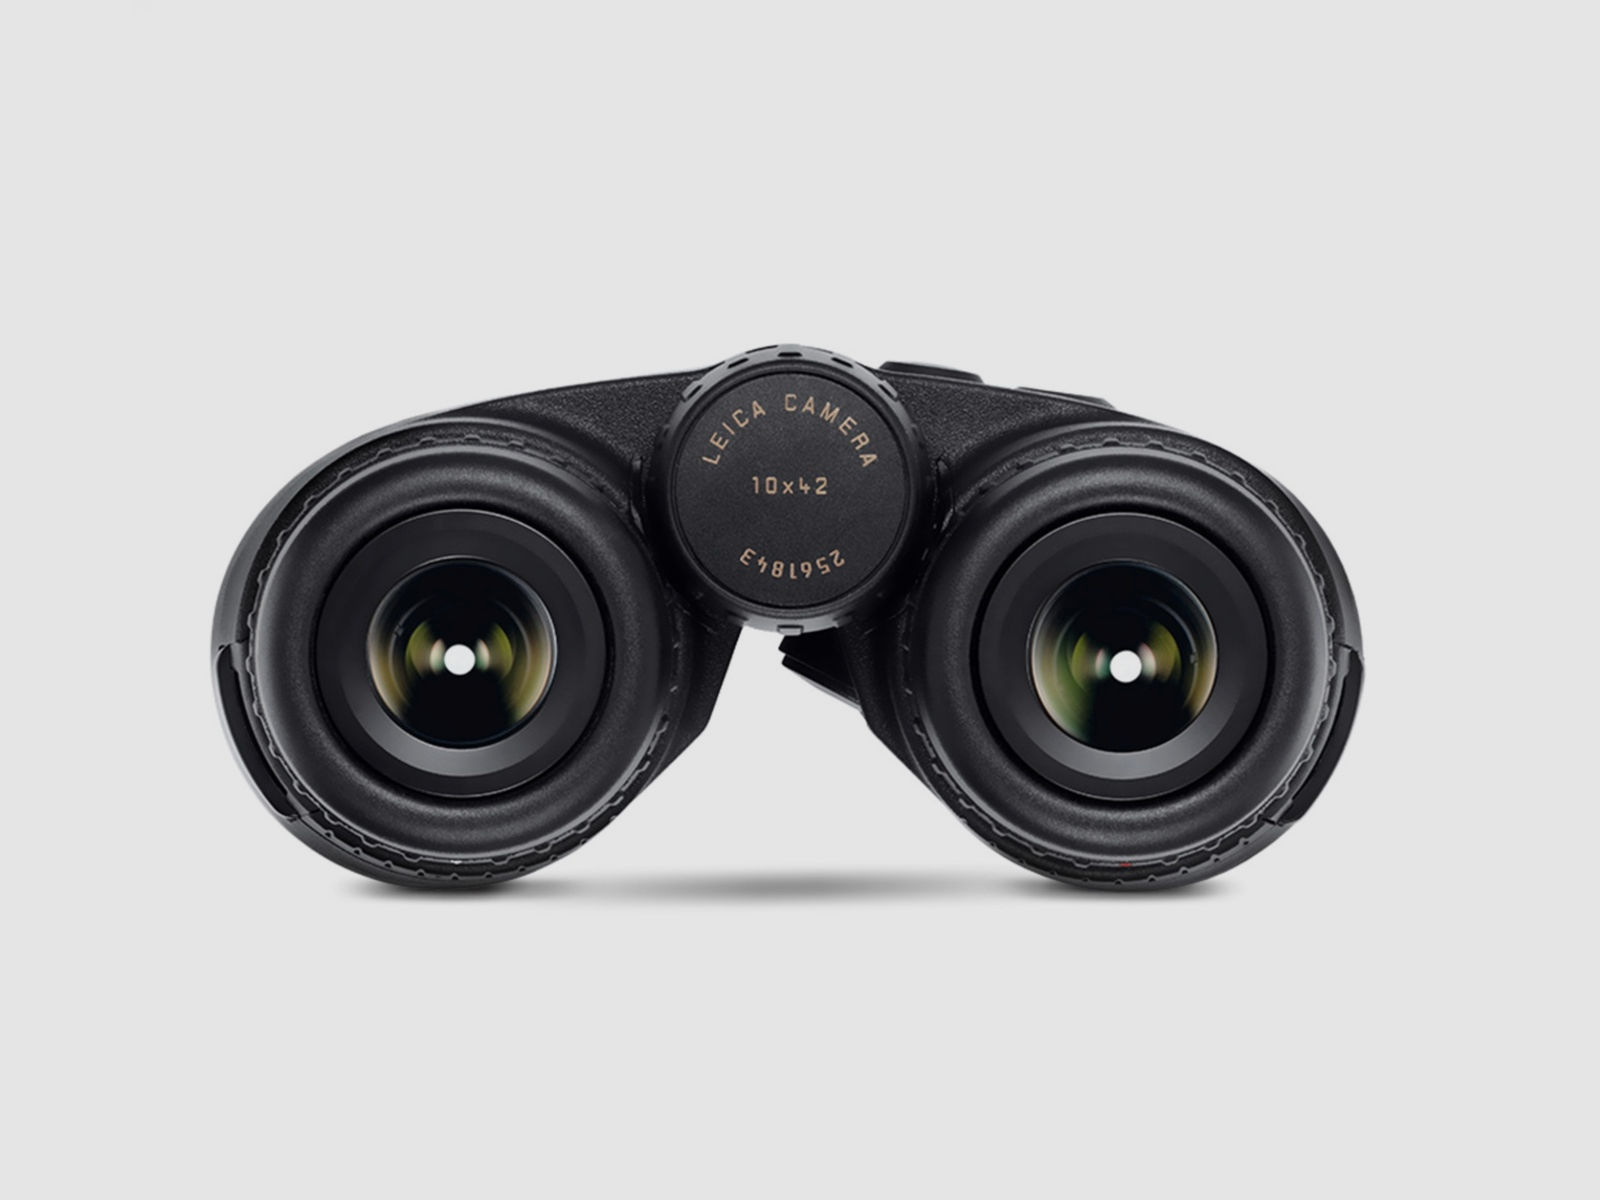 Leica Geovid R 10x42 Fernglas mit Entfernungsmesser bis zu 1800m 40812